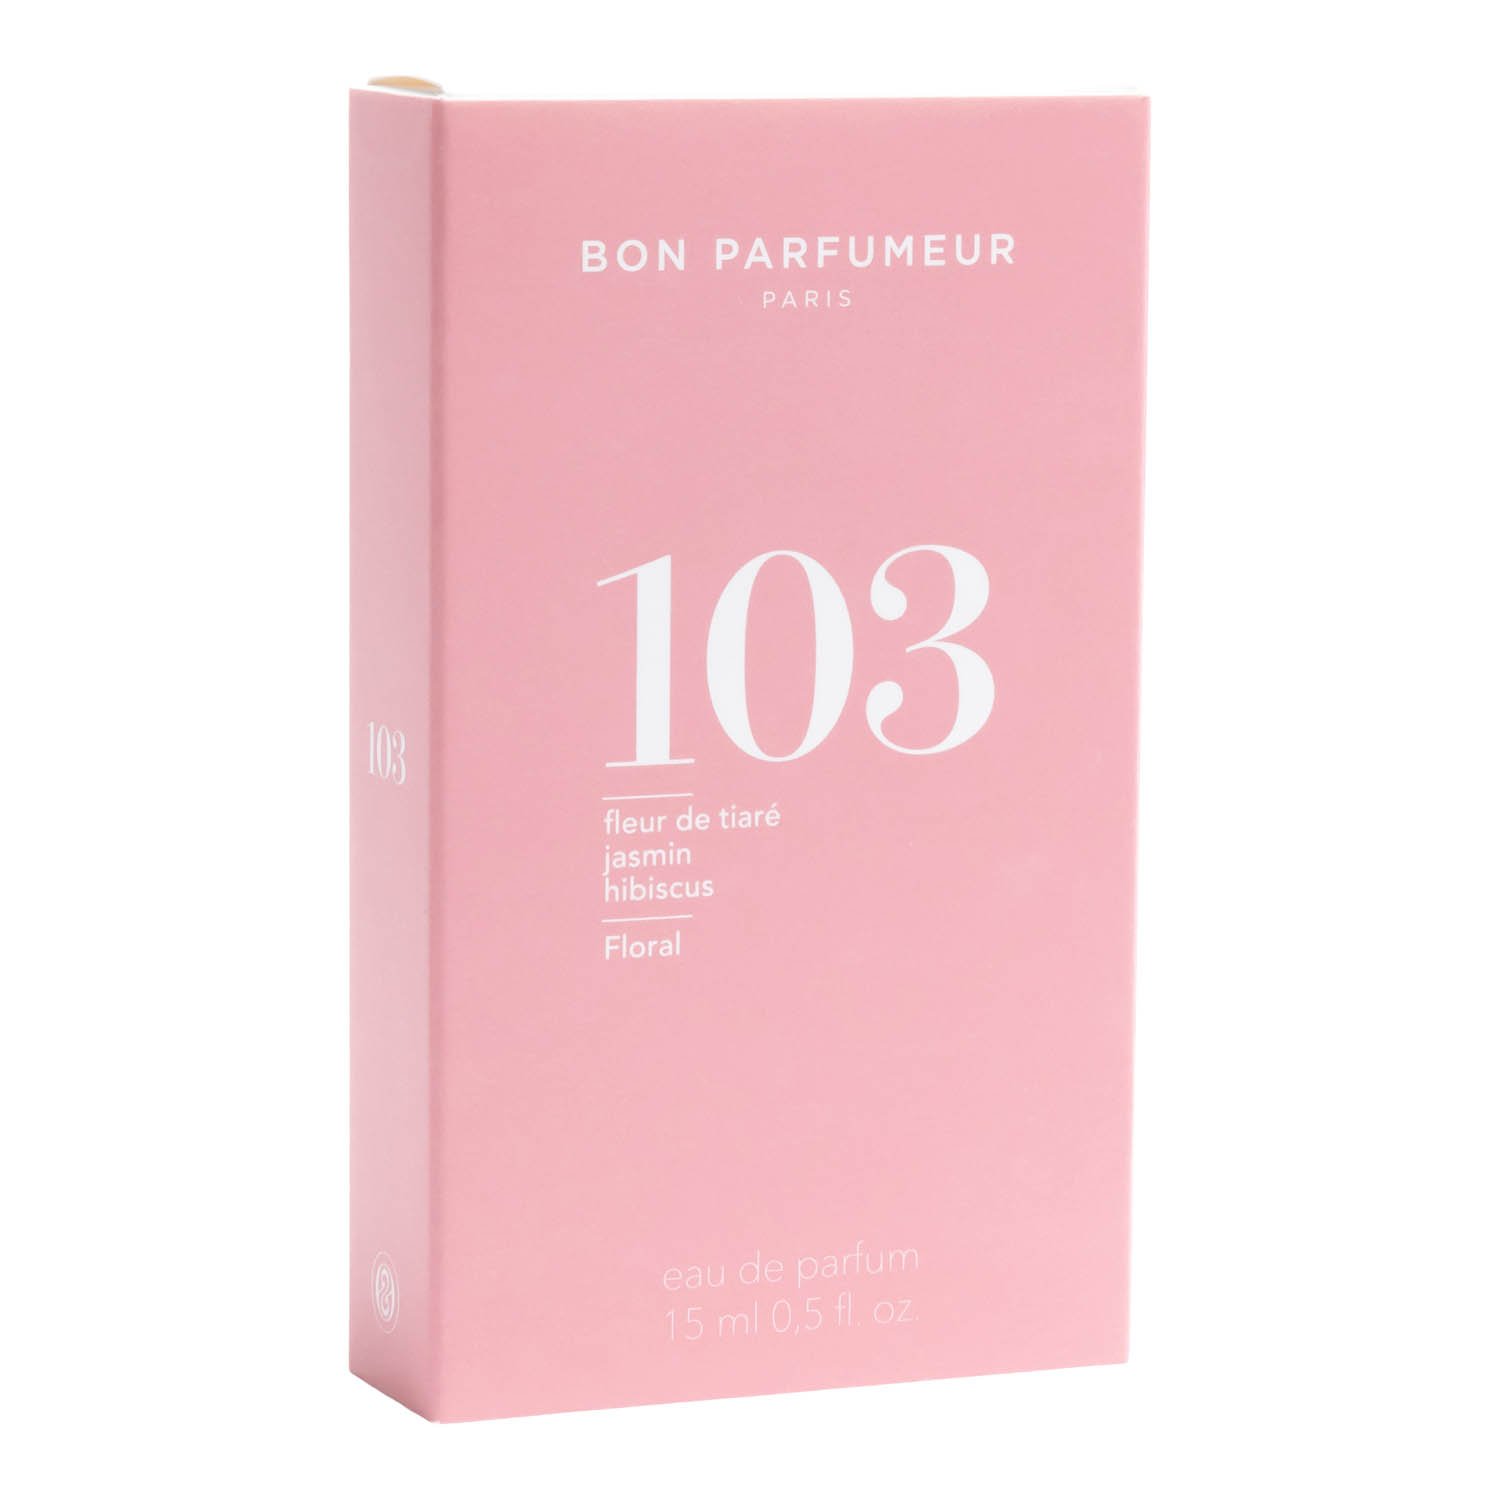 Bon Parfumeur Eau de Parfum 103 15 ml